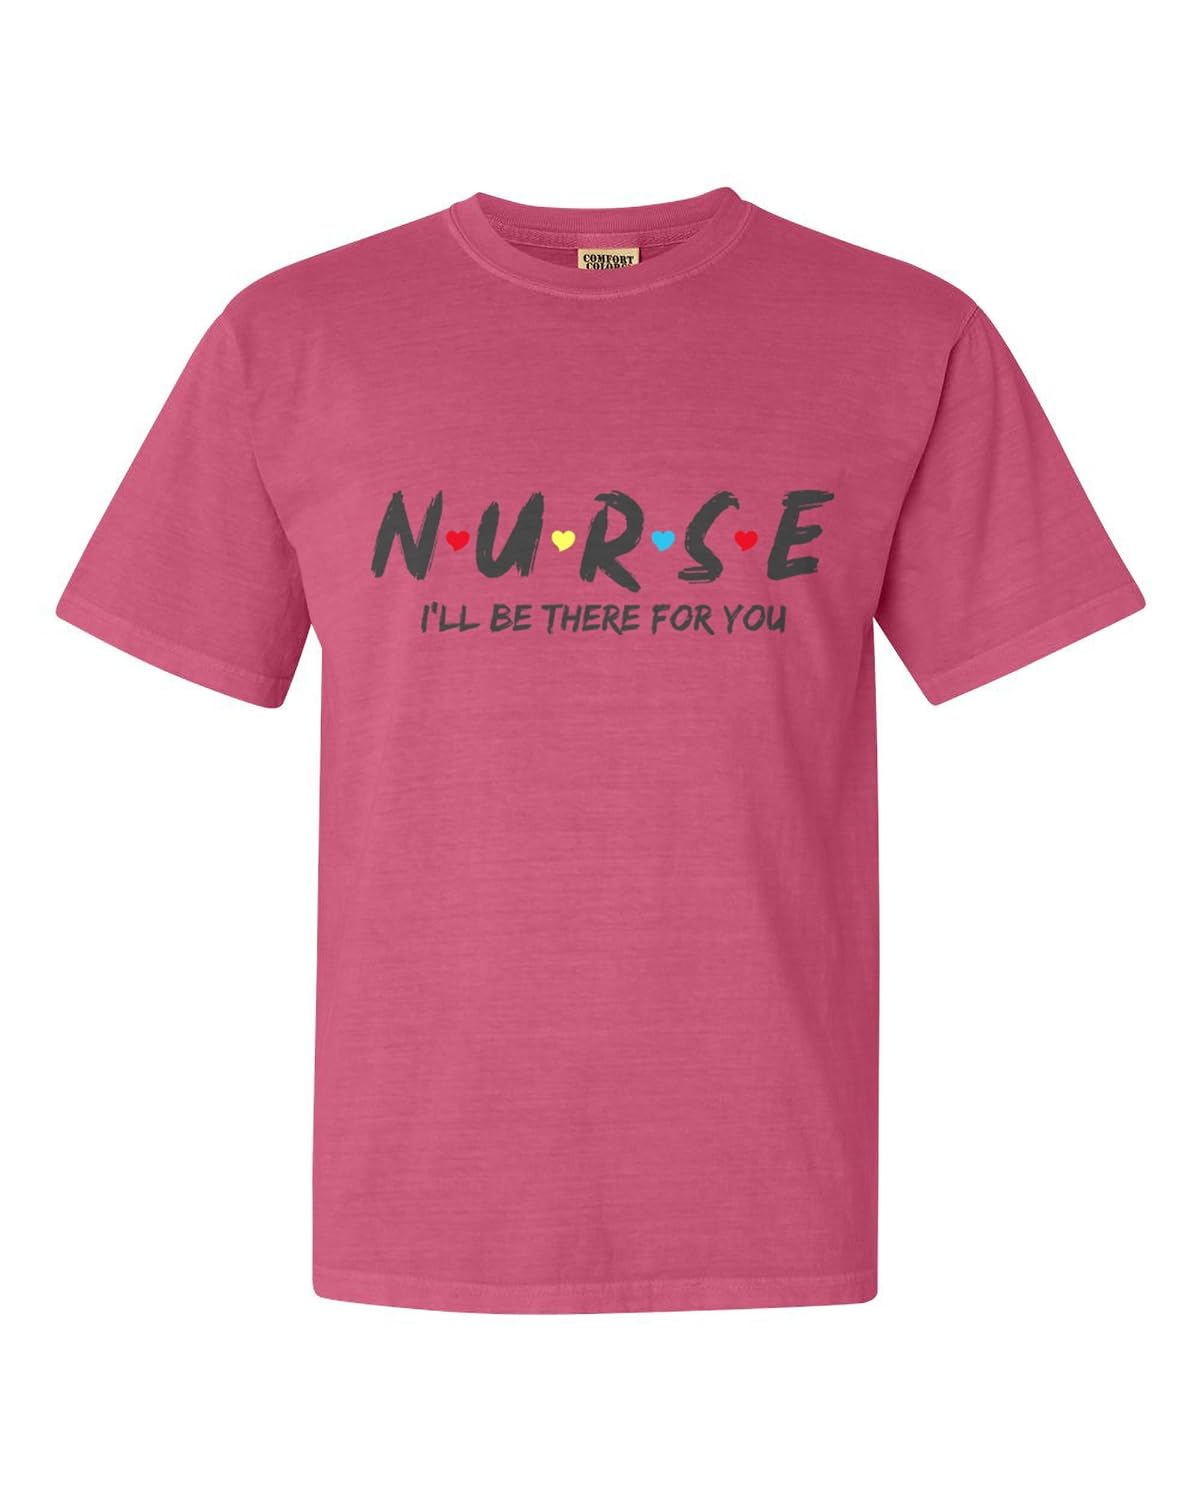 Nurse T Shirt crunchberry color